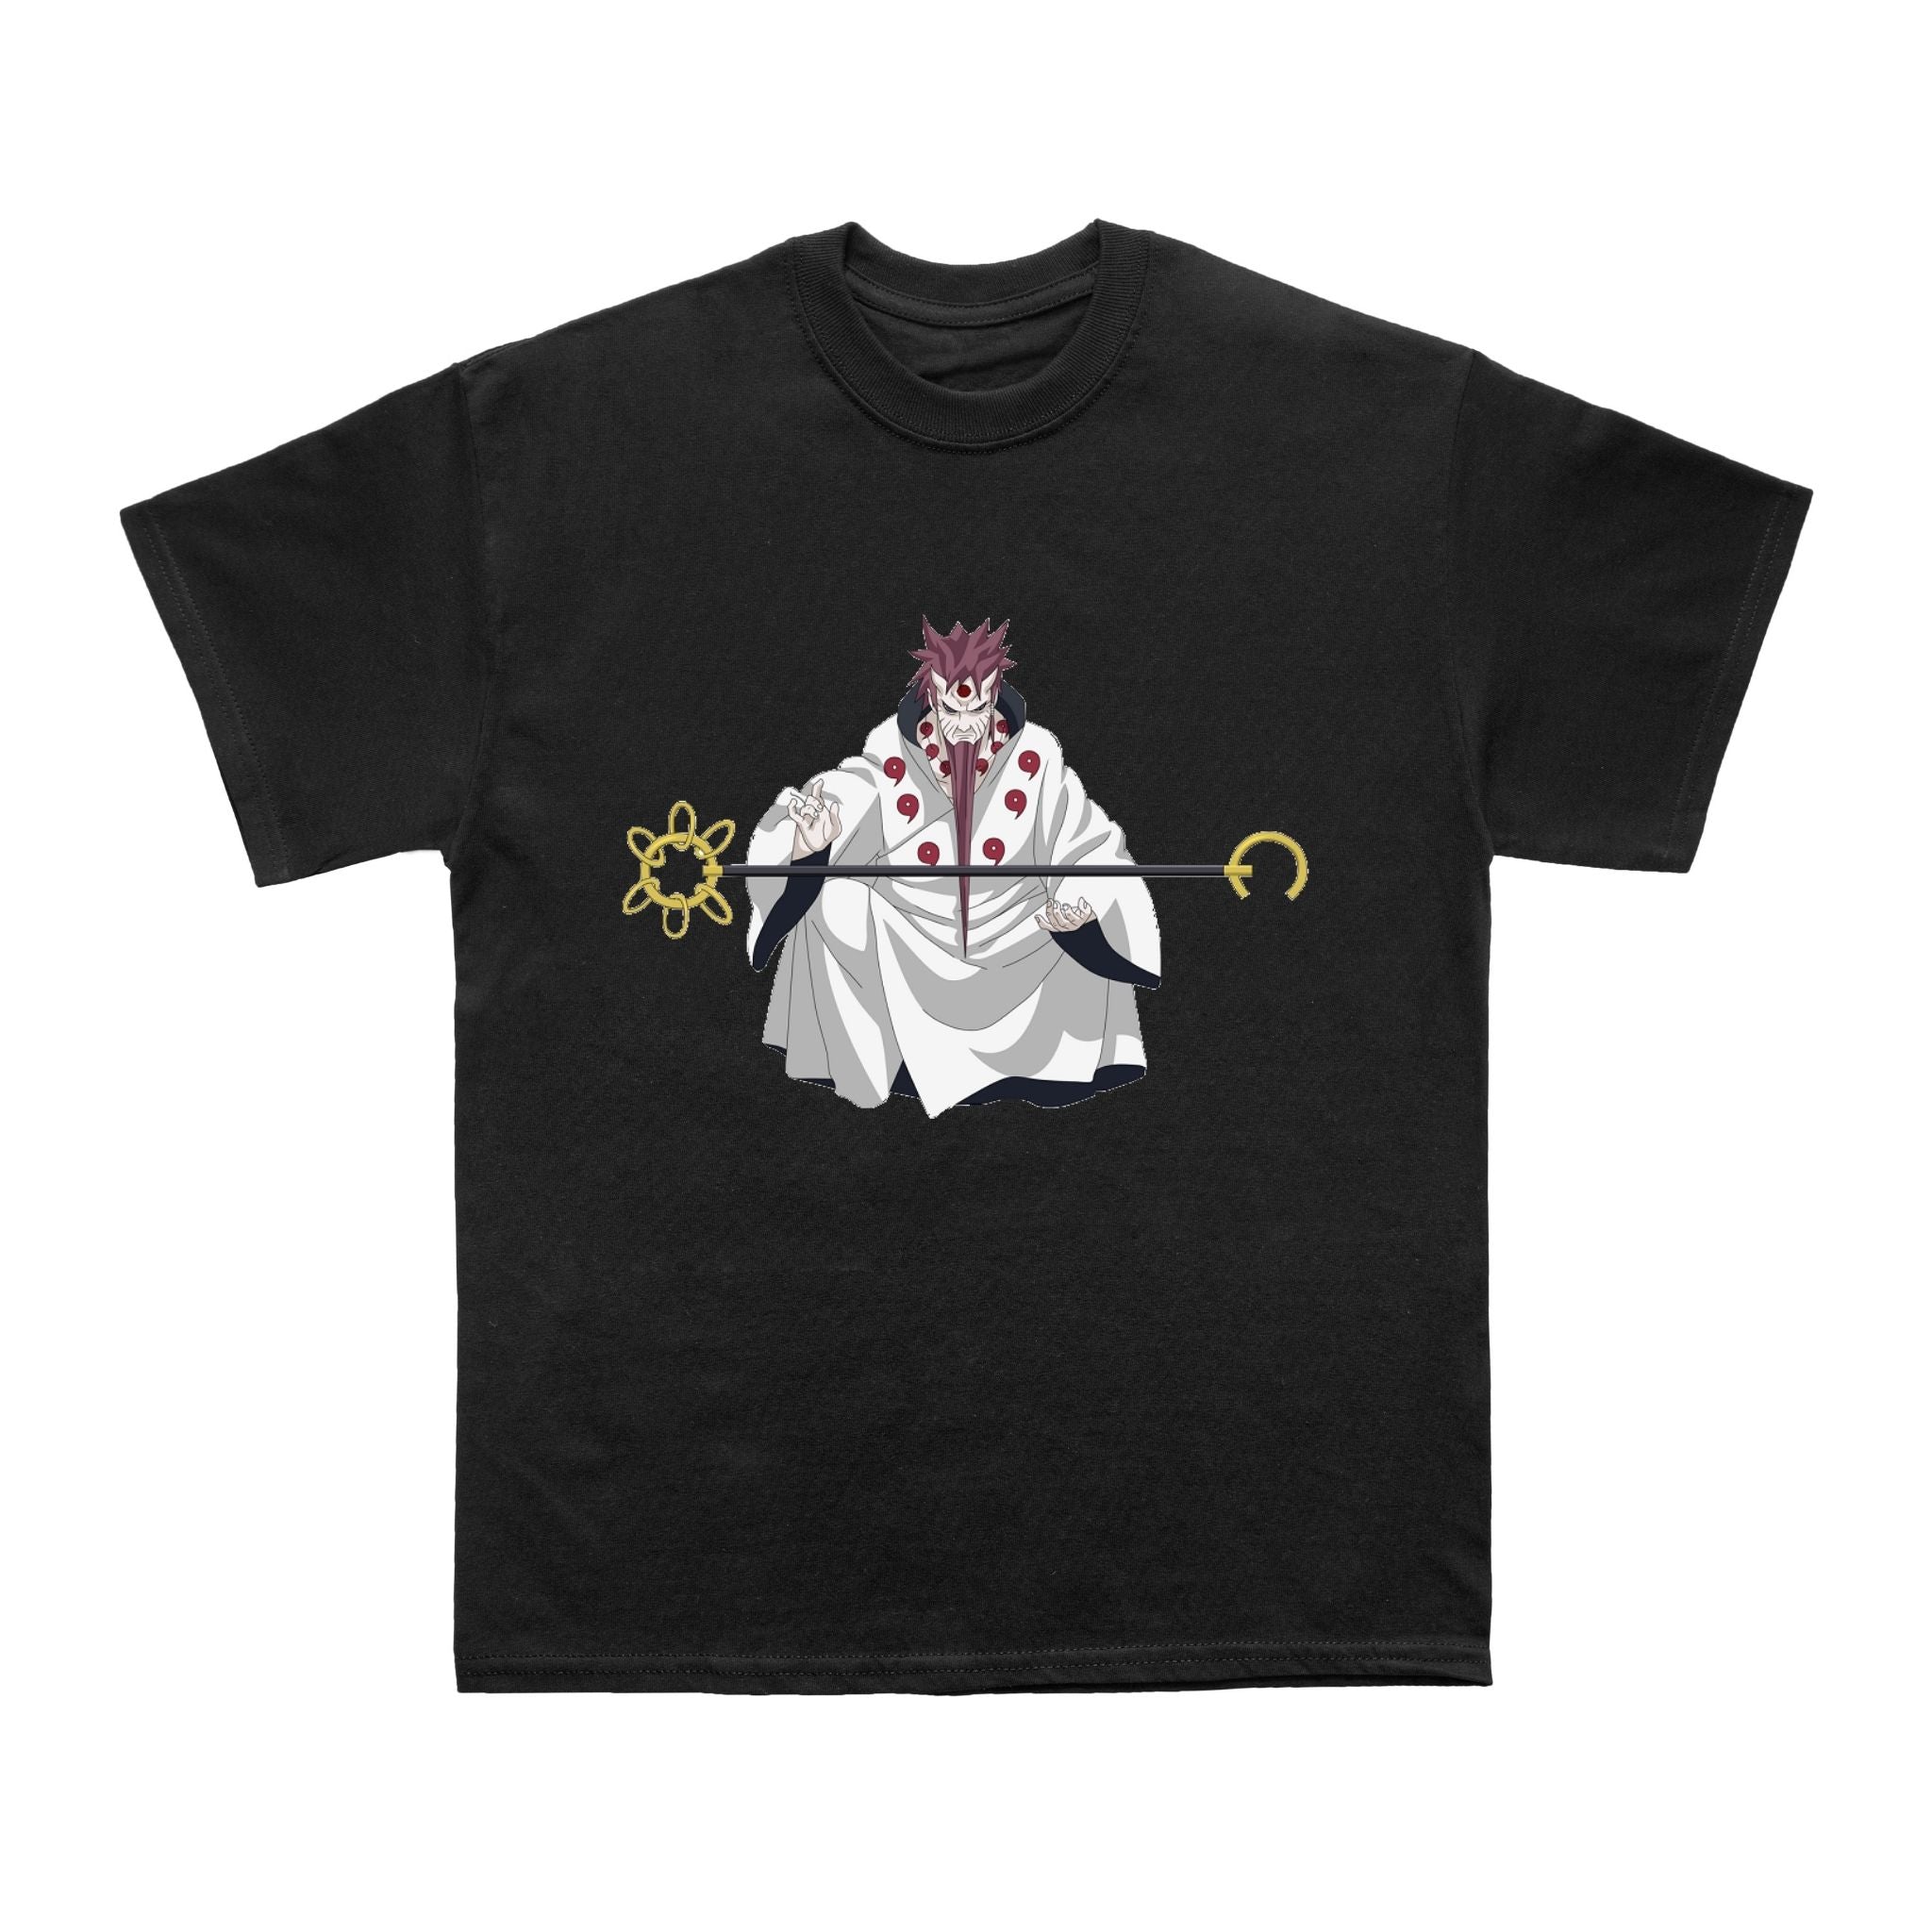 King Ninja Art Anime Inspired T shirt